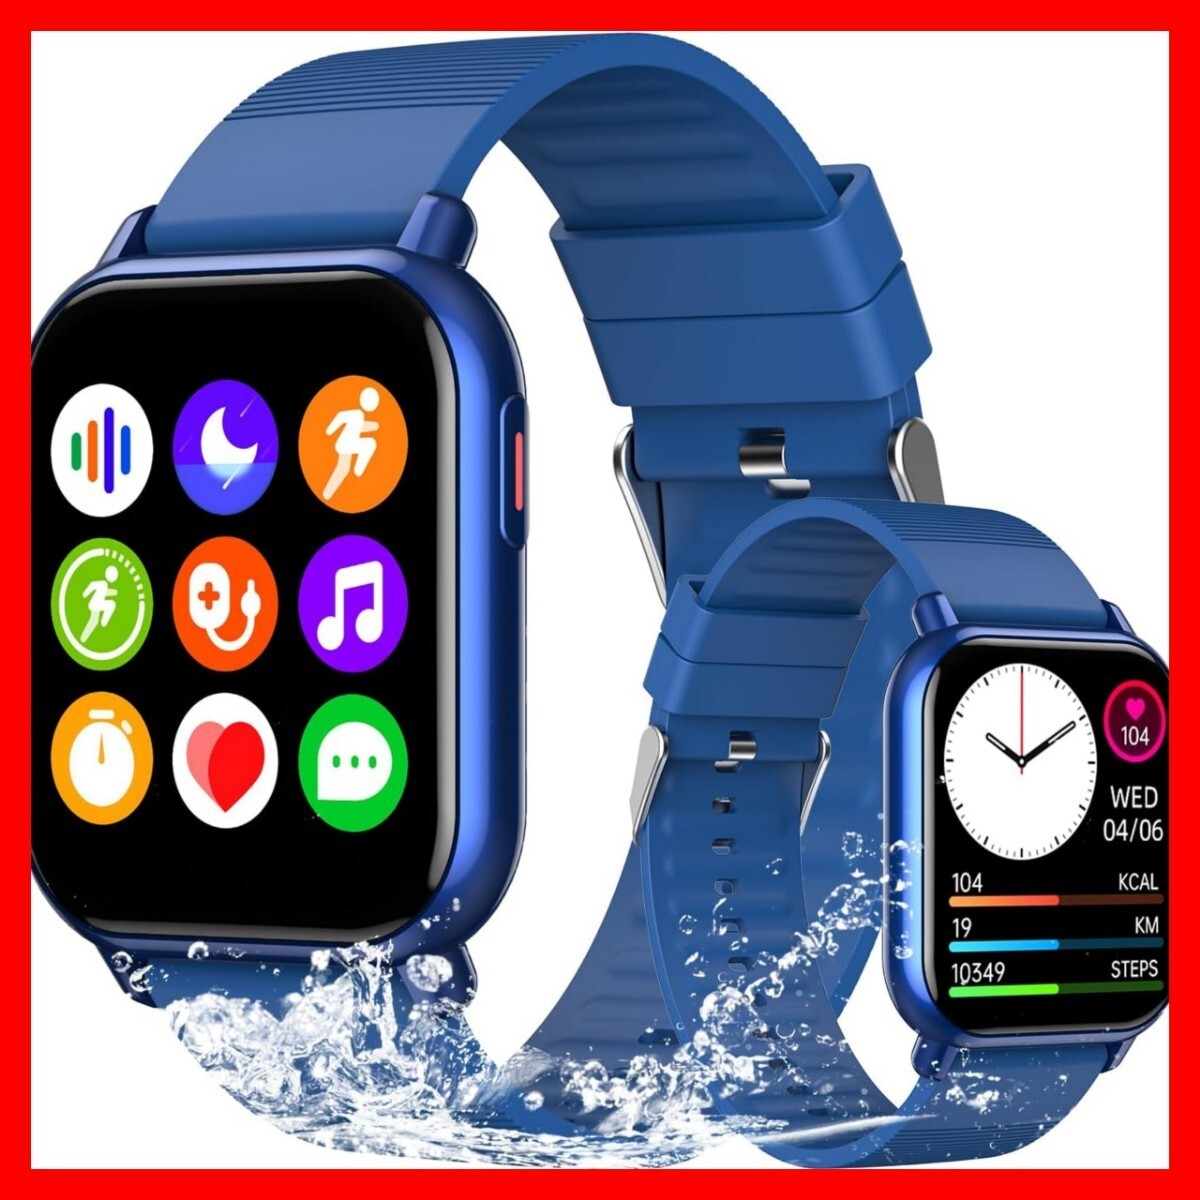 ◆新品 本体 スマートウォッチ 着信通知 ブルー 青 防水 1.85インチ大画面 腕時計 Bluetooth iPhone対応 Android対応 日本語説明書 _画像1